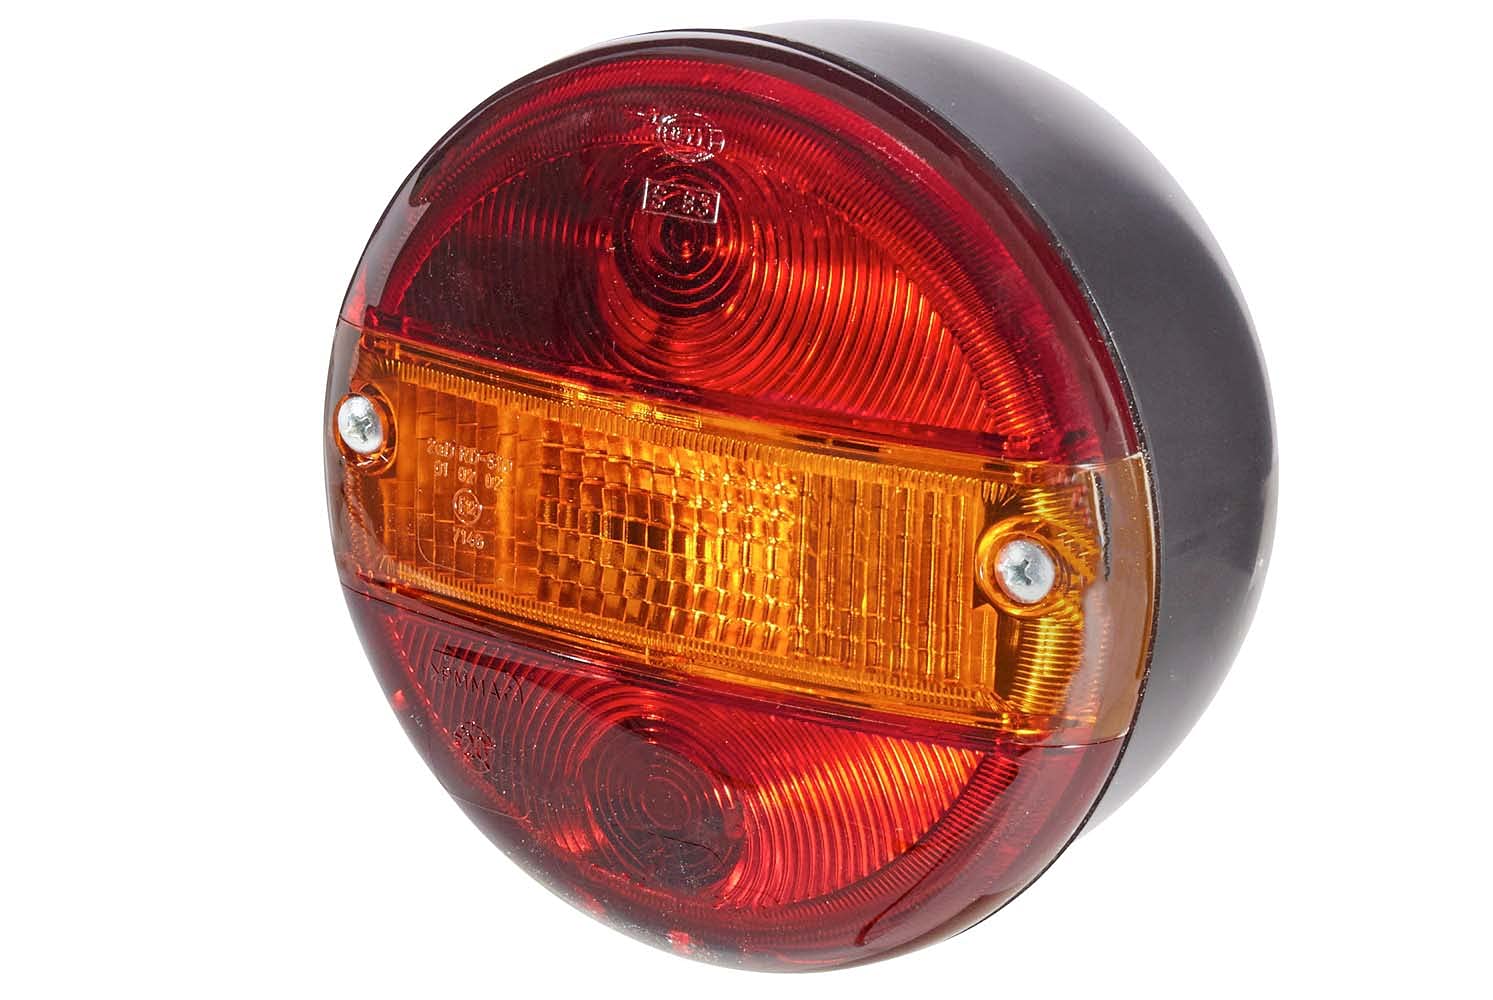 HELLA - Heckleuchte - Glühlampe - 24/12V - Anbau/geschraubt - Lichtscheibenfarbe: rot/gelb - Stecker: Flachstecker - links/rechts - Menge: 1 - 2SD 001 685-231 von Hella